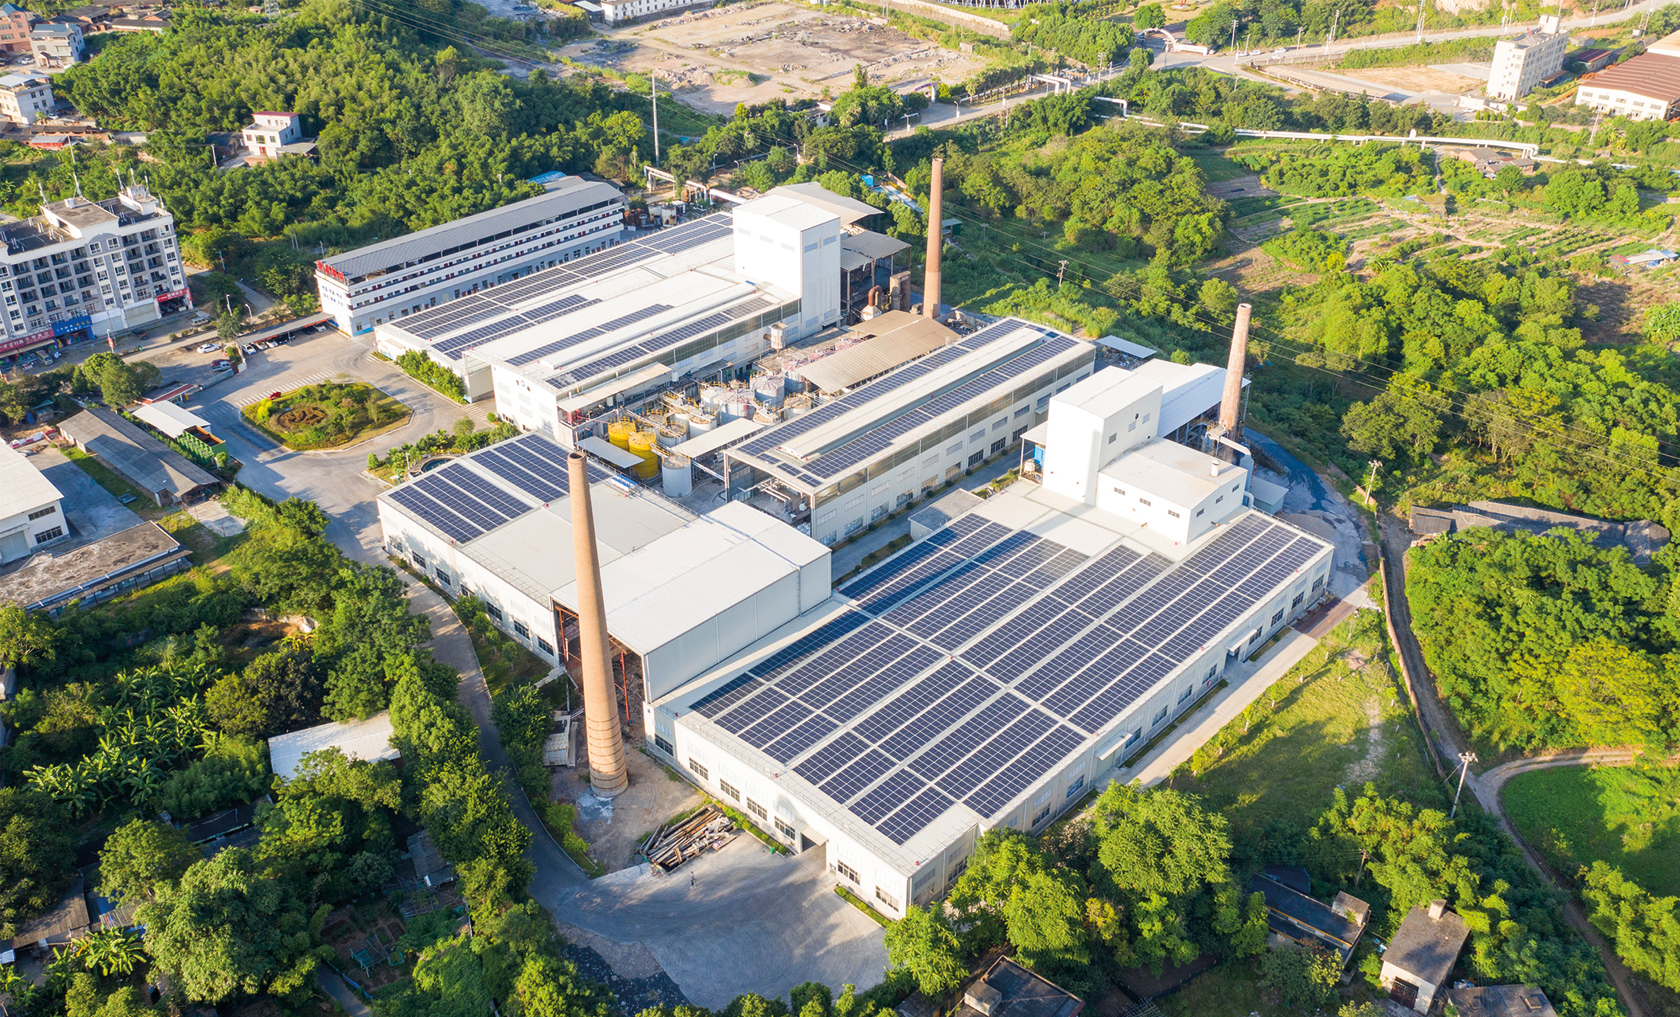 Die Dachfläche einer Fabrikhalle ist mit zahlreichen Photovoltaikmodulen ausgestattet. © Longhua Liao / Moment via Getty Images